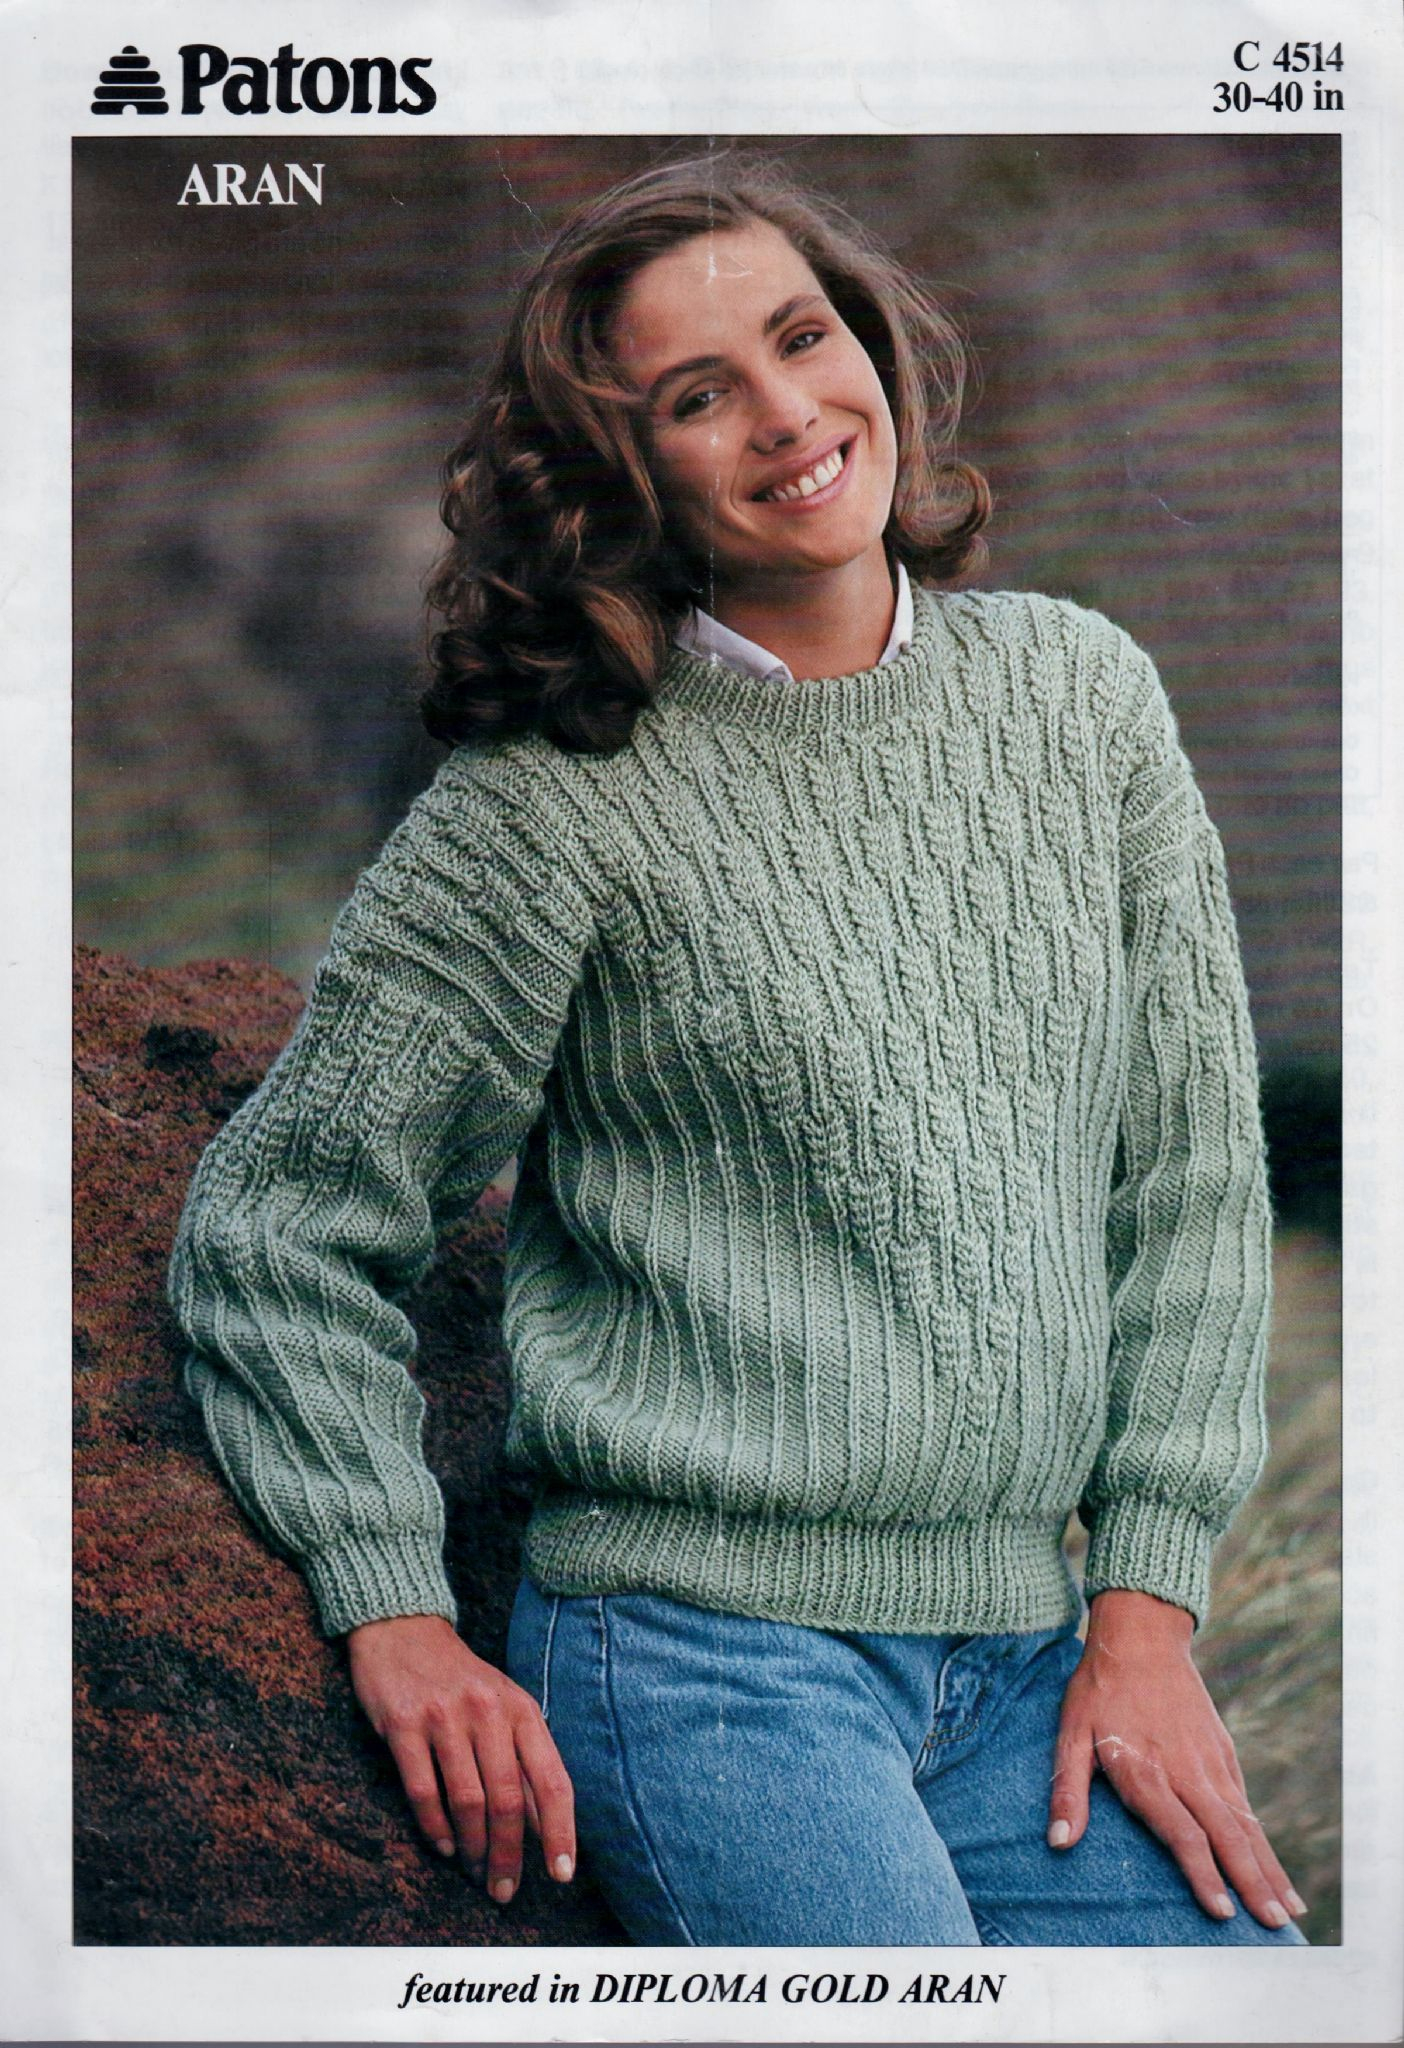 Knitting Patterns Aran Instant Pdf Digital Download Vintage Knitting Pattern Patons C4515 Ladies Aran Sweater Jumper 30 40